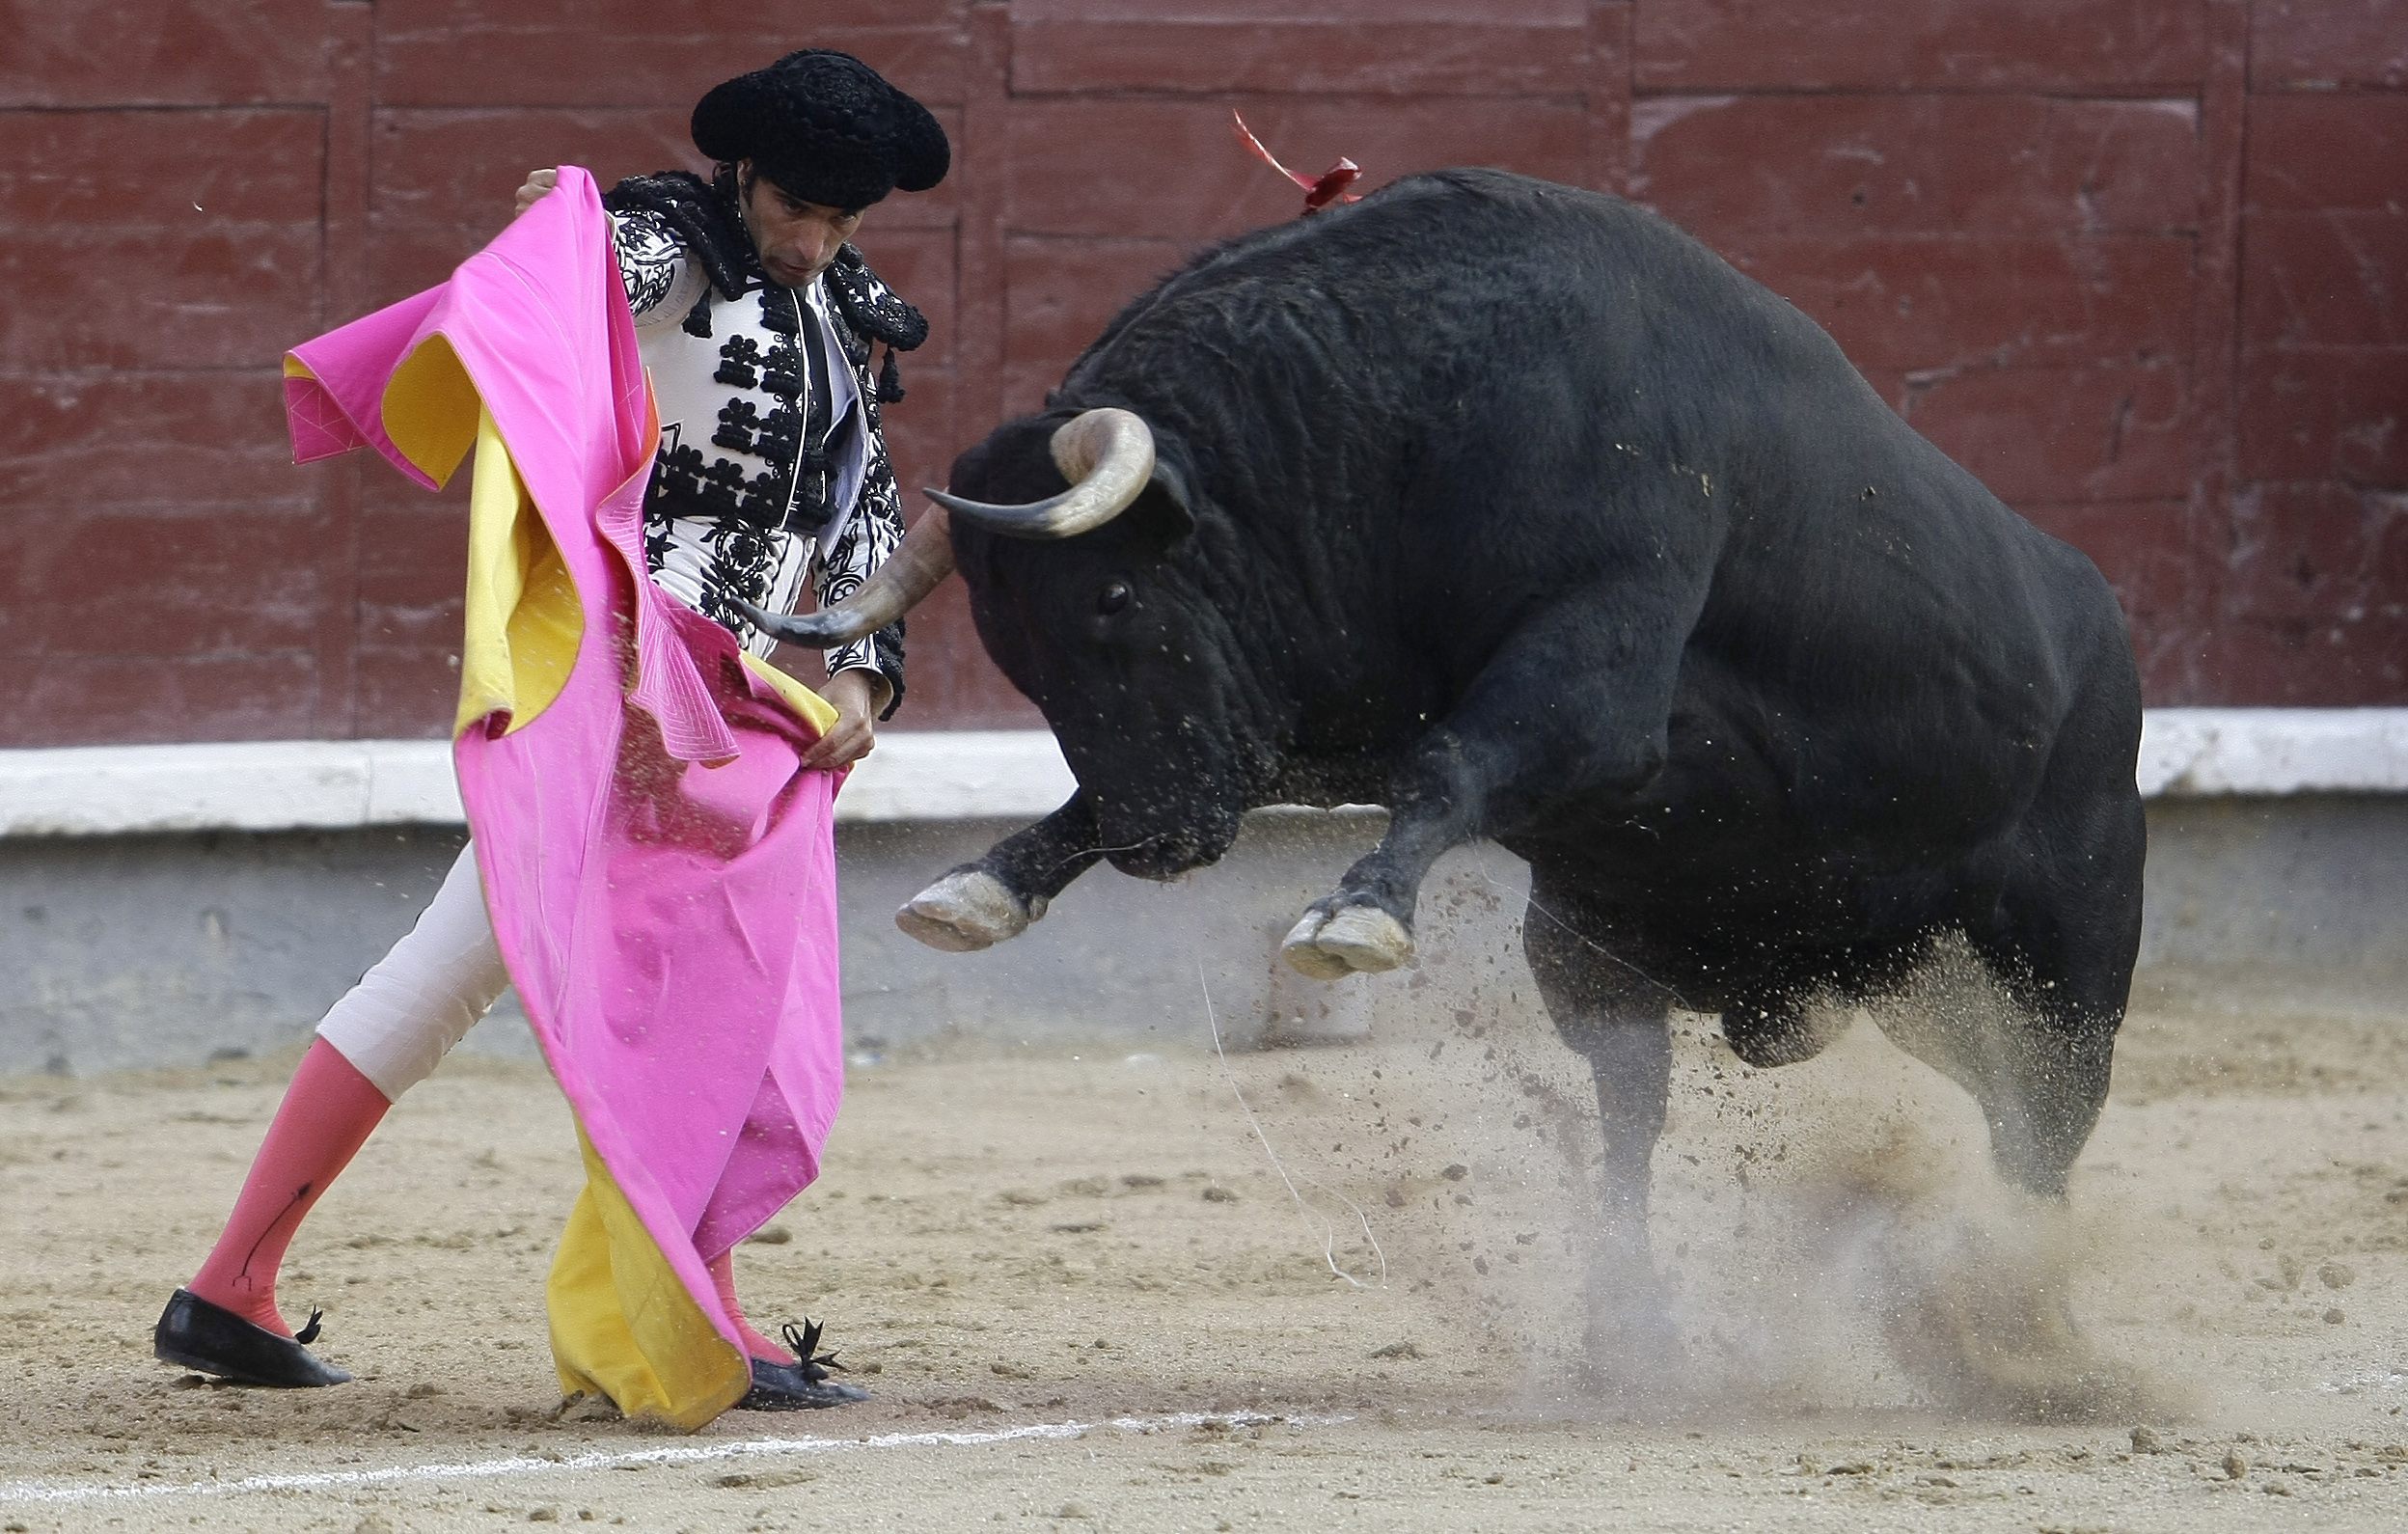 Bullfight in Madrid's Las Ventas bullring